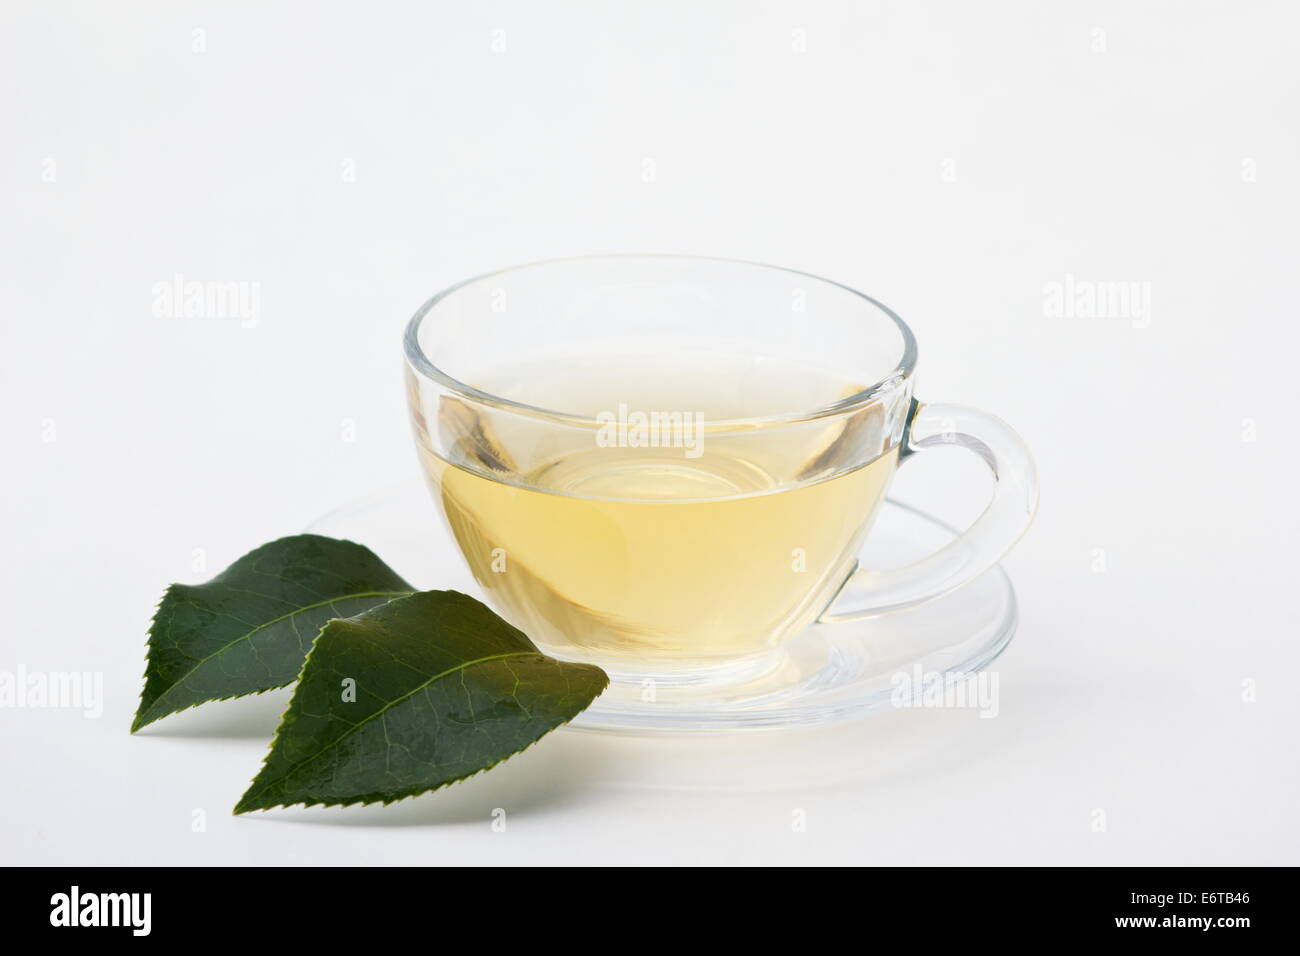 Le thé vert dans une tasse en verre sur fond blanc Banque D'Images